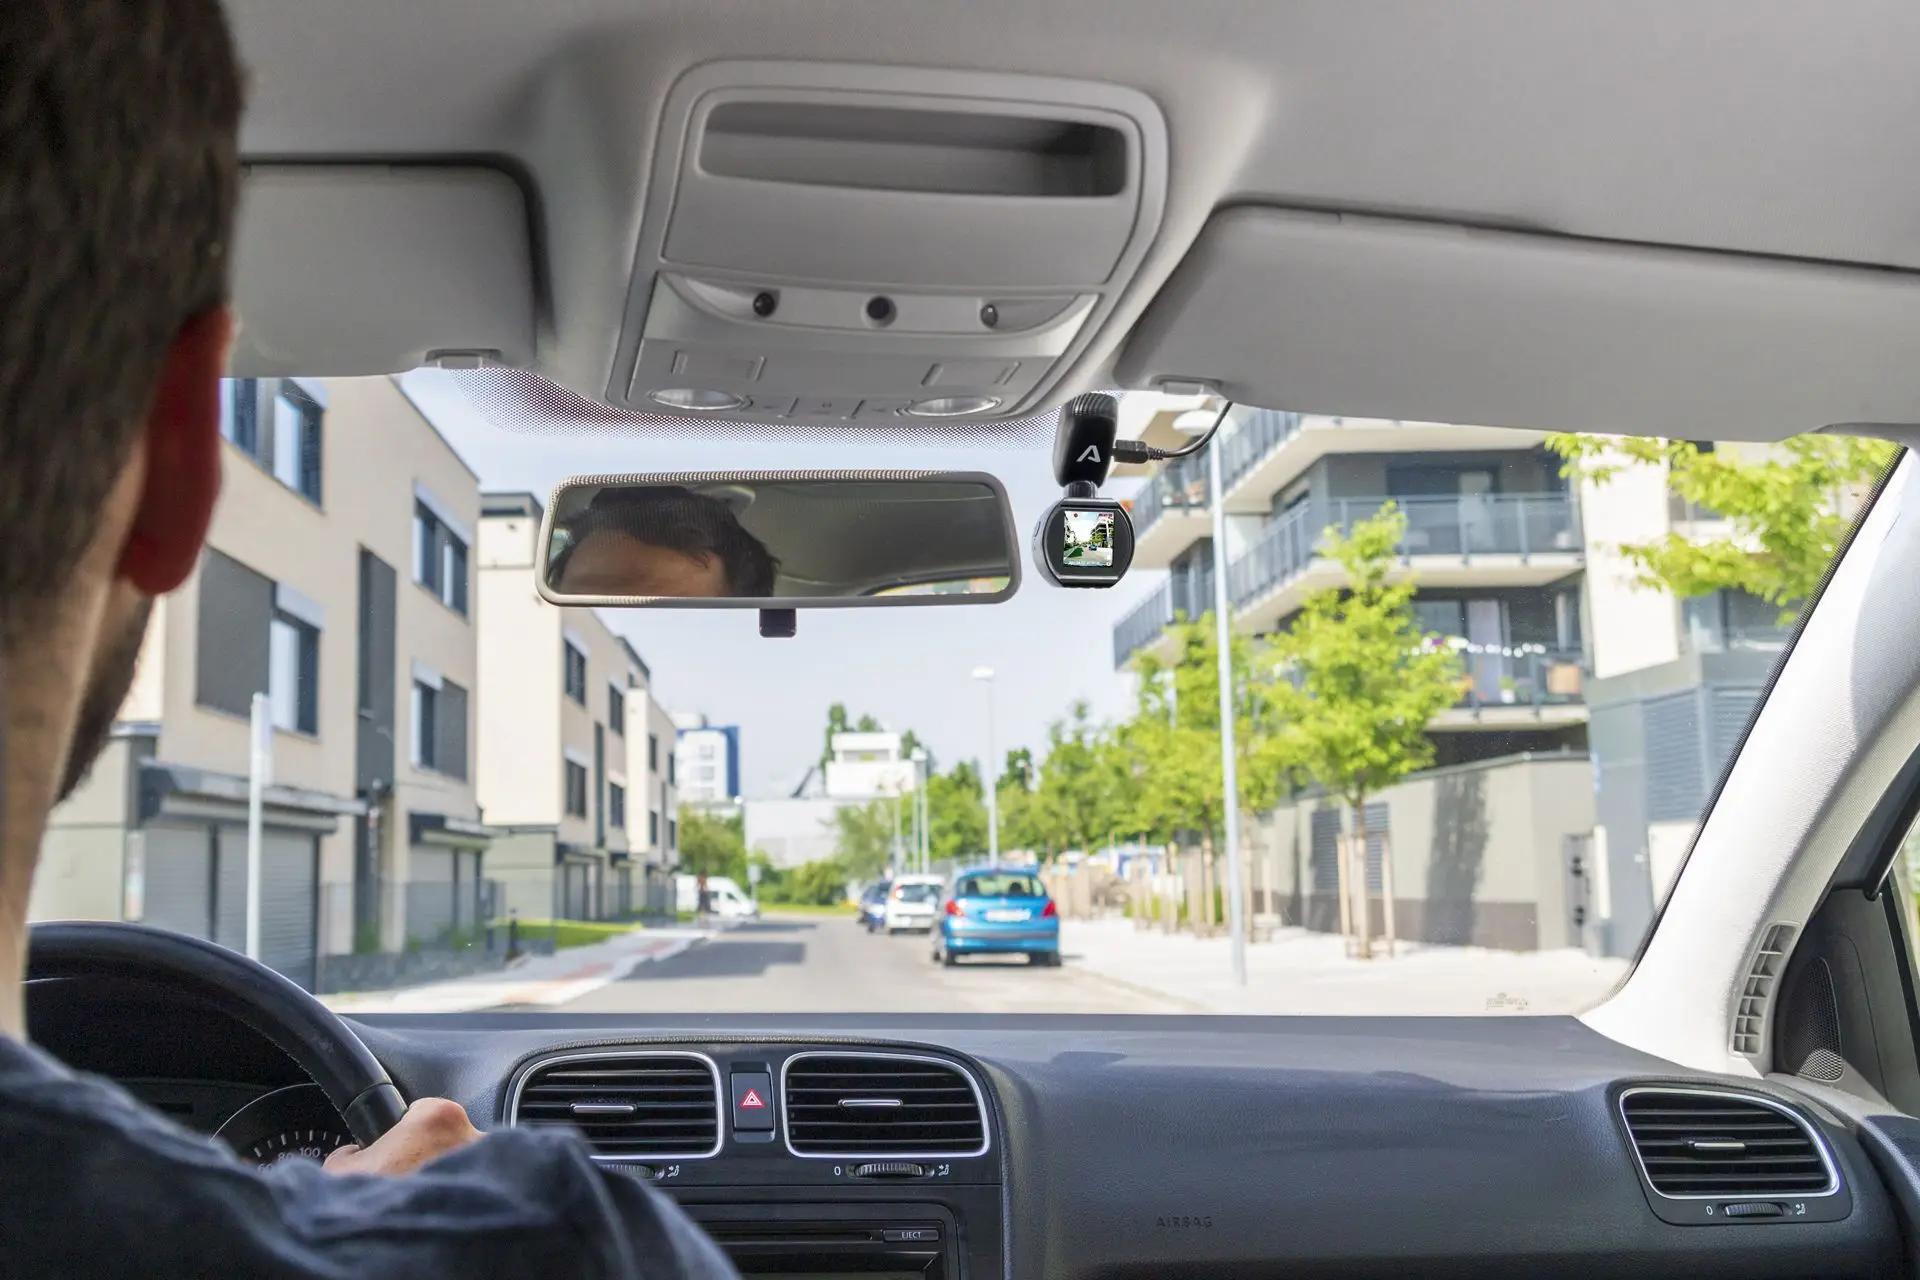 Autokamera Lama T4 vás s volitelnám GPS držákem upozorní na stacionární silniční radary, čímž vám pomůže jezdit správně podle předpisů.